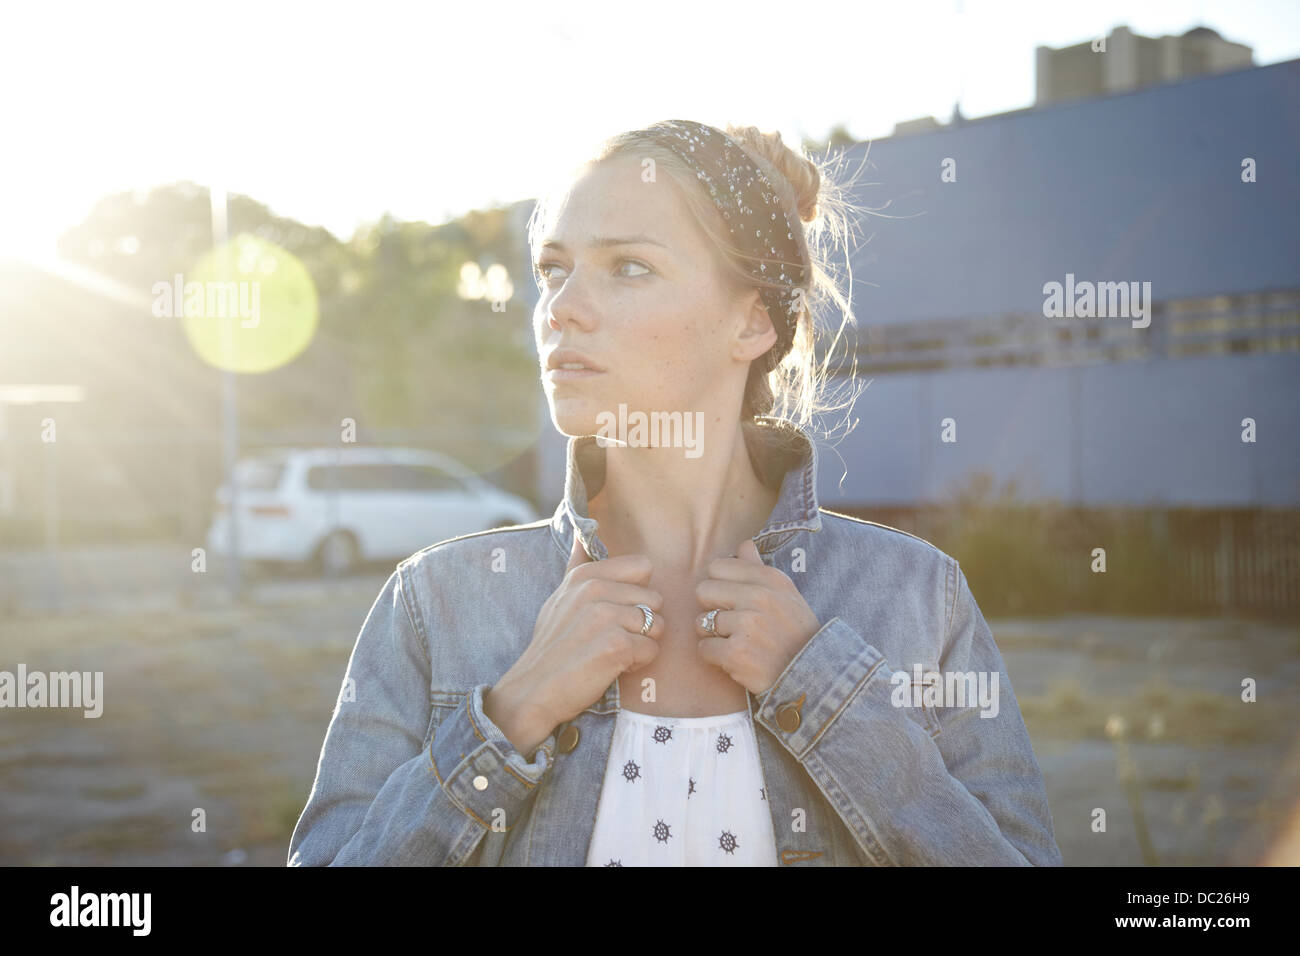 Retrato de mujer sosteniendo el collarín en el distrito industrial de la chaqueta Foto de stock